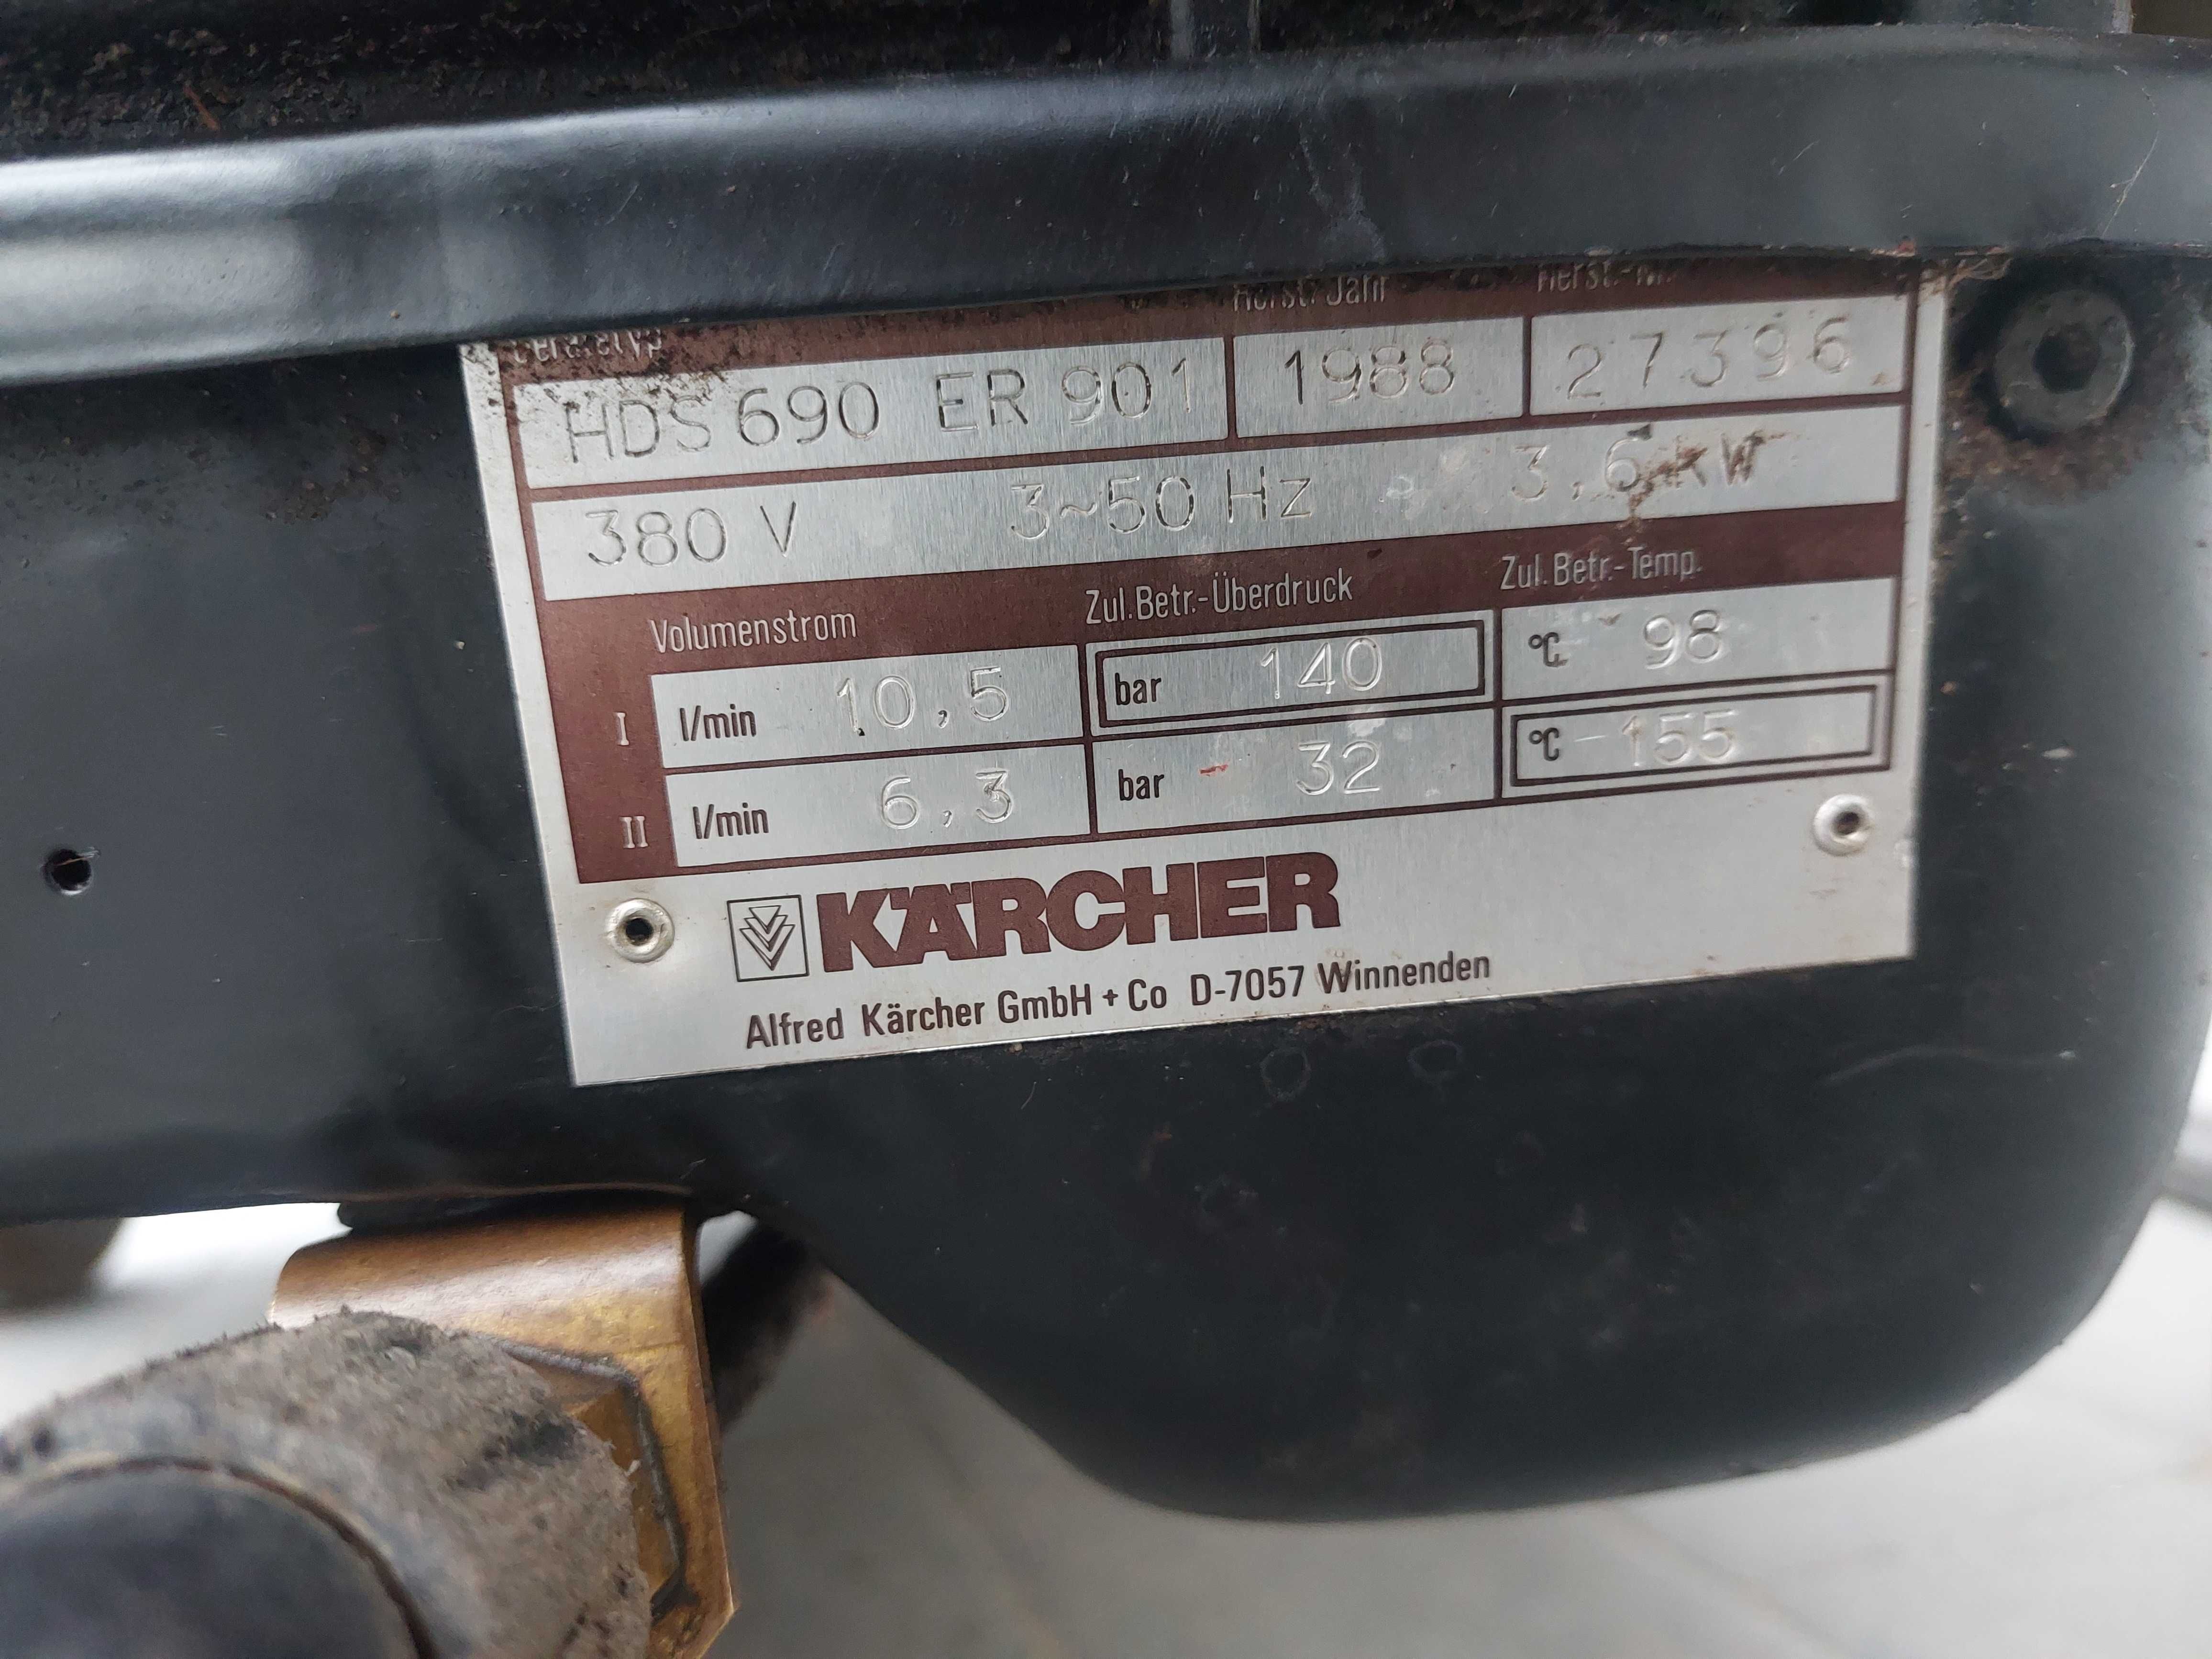 Myjka Karcher HDS 690 po serwisie